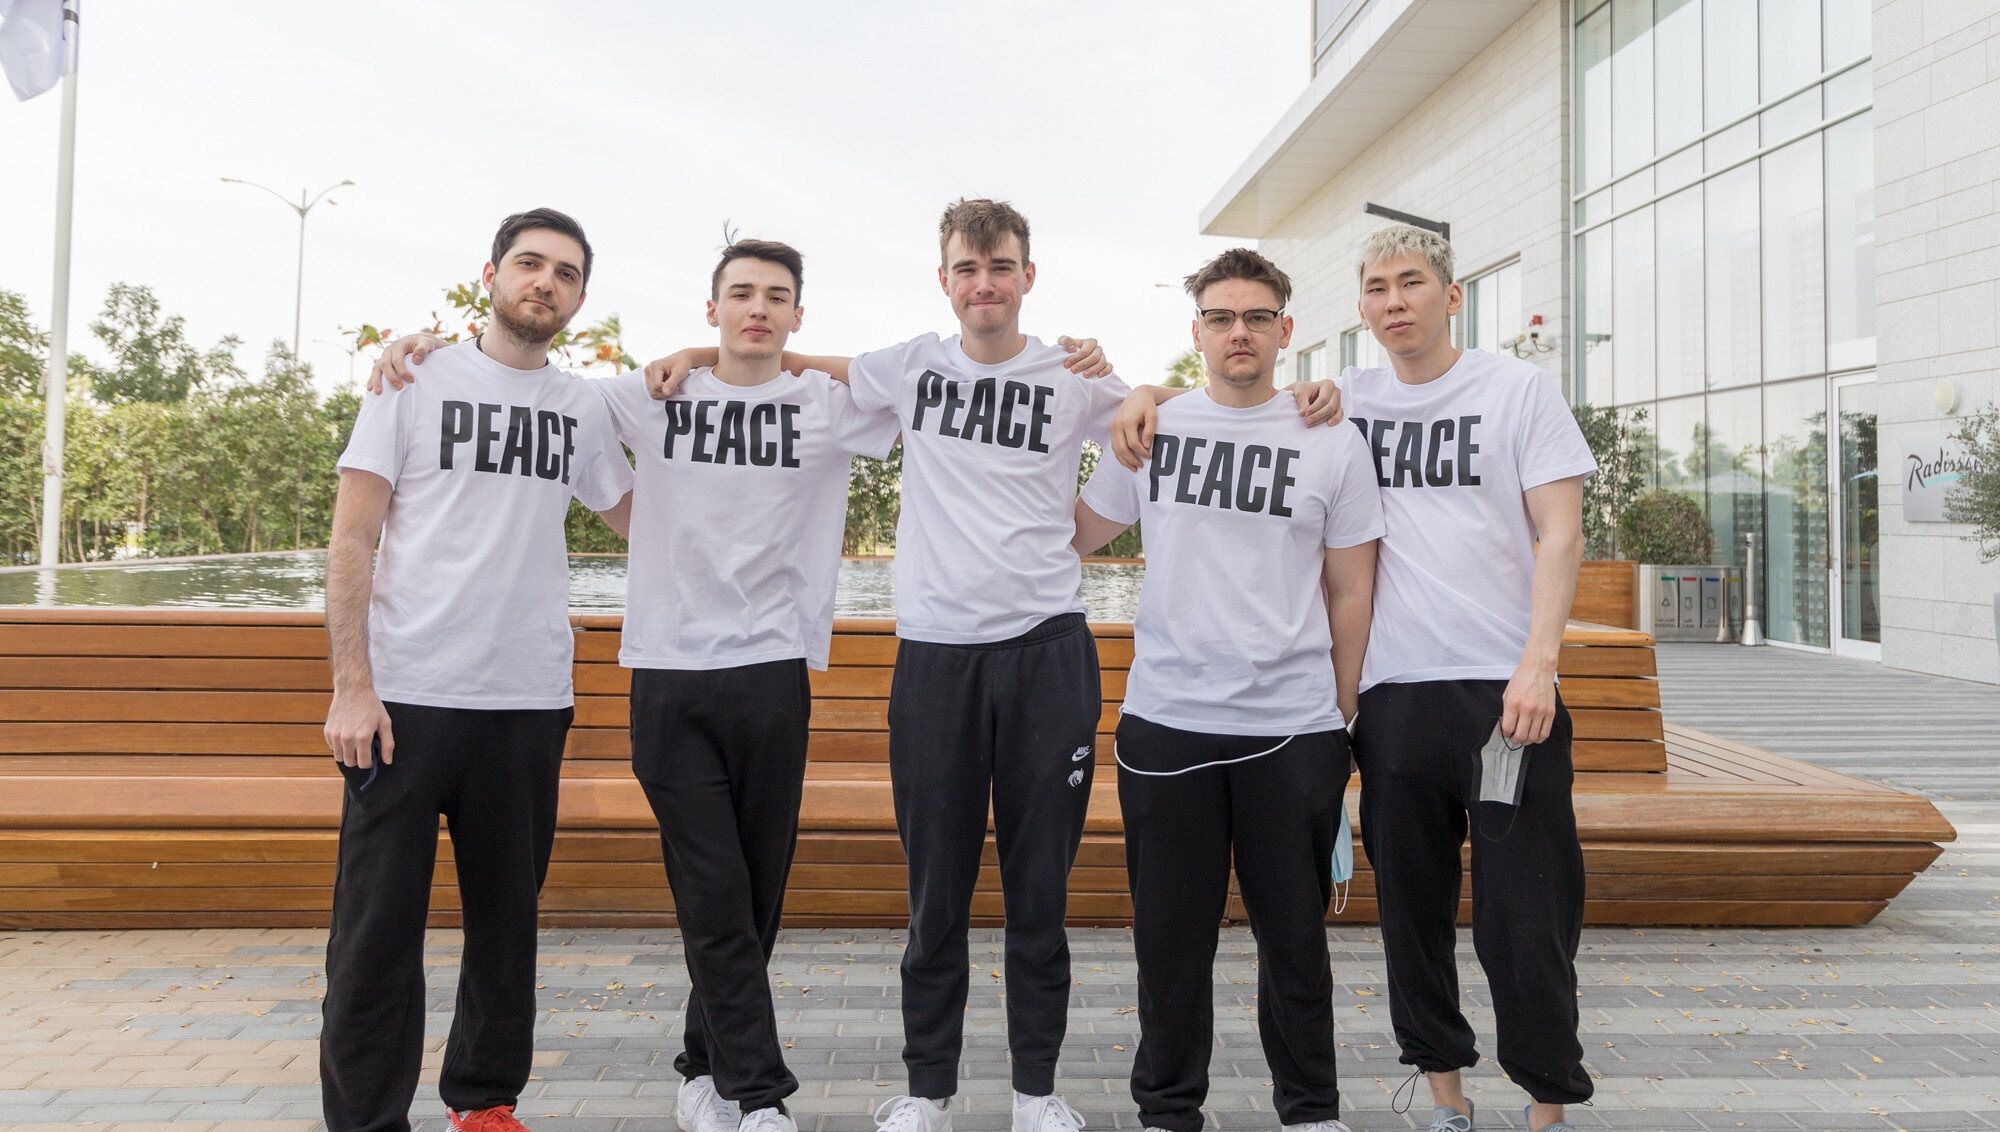 Team Spirit в футболках с надписью «Мир»